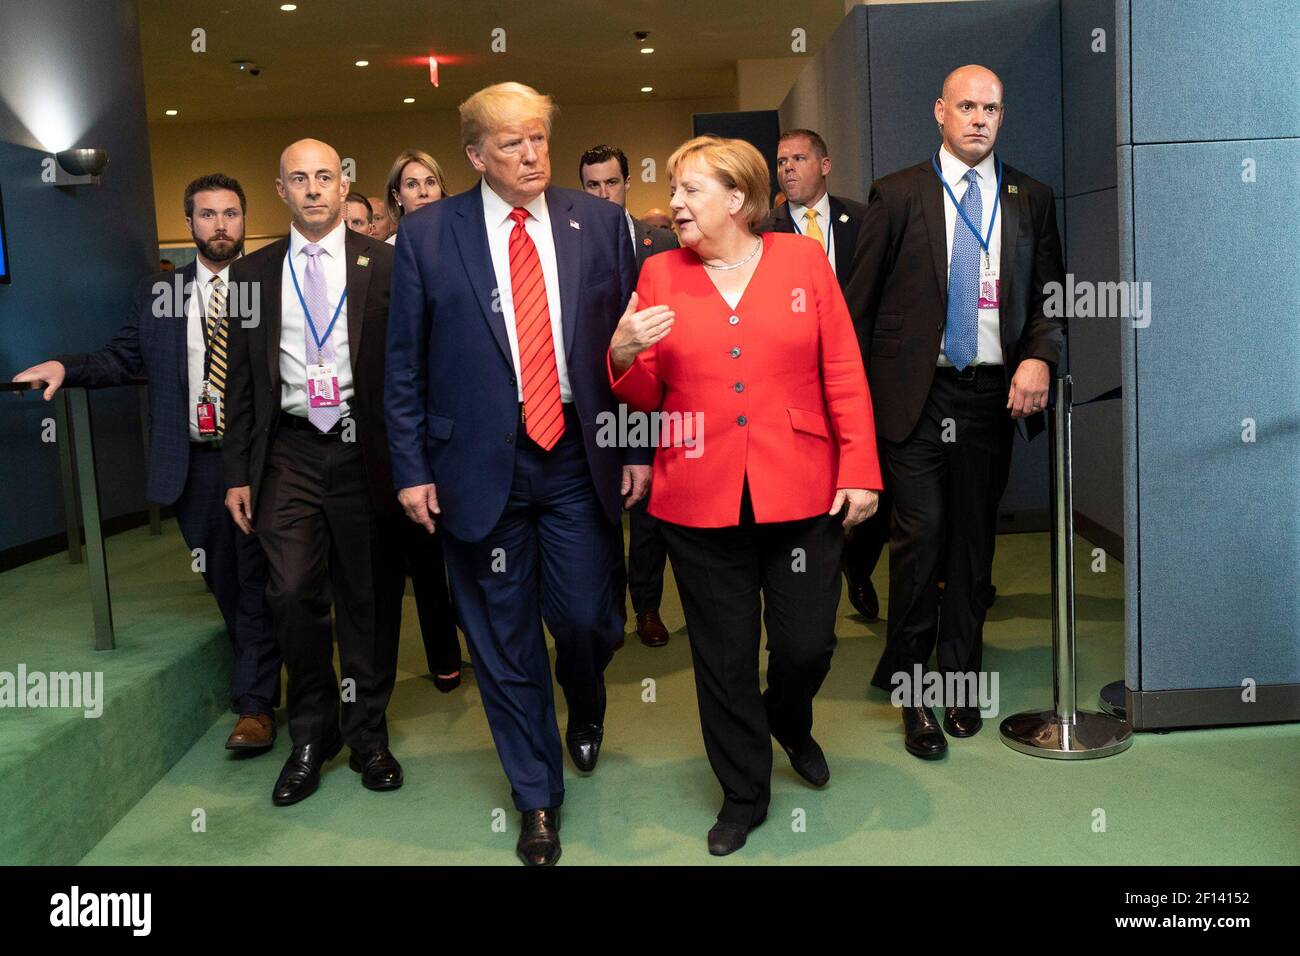 El presidente Donald Trump se reúne informalmente con la canciller alemana Angela Merkel y el presidente argentino Mauricio Macri el martes 24 2019 de septiembre mientras se prepara para salir de la sede de las Naciones Unidas en la ciudad de Nueva York. Foto de stock